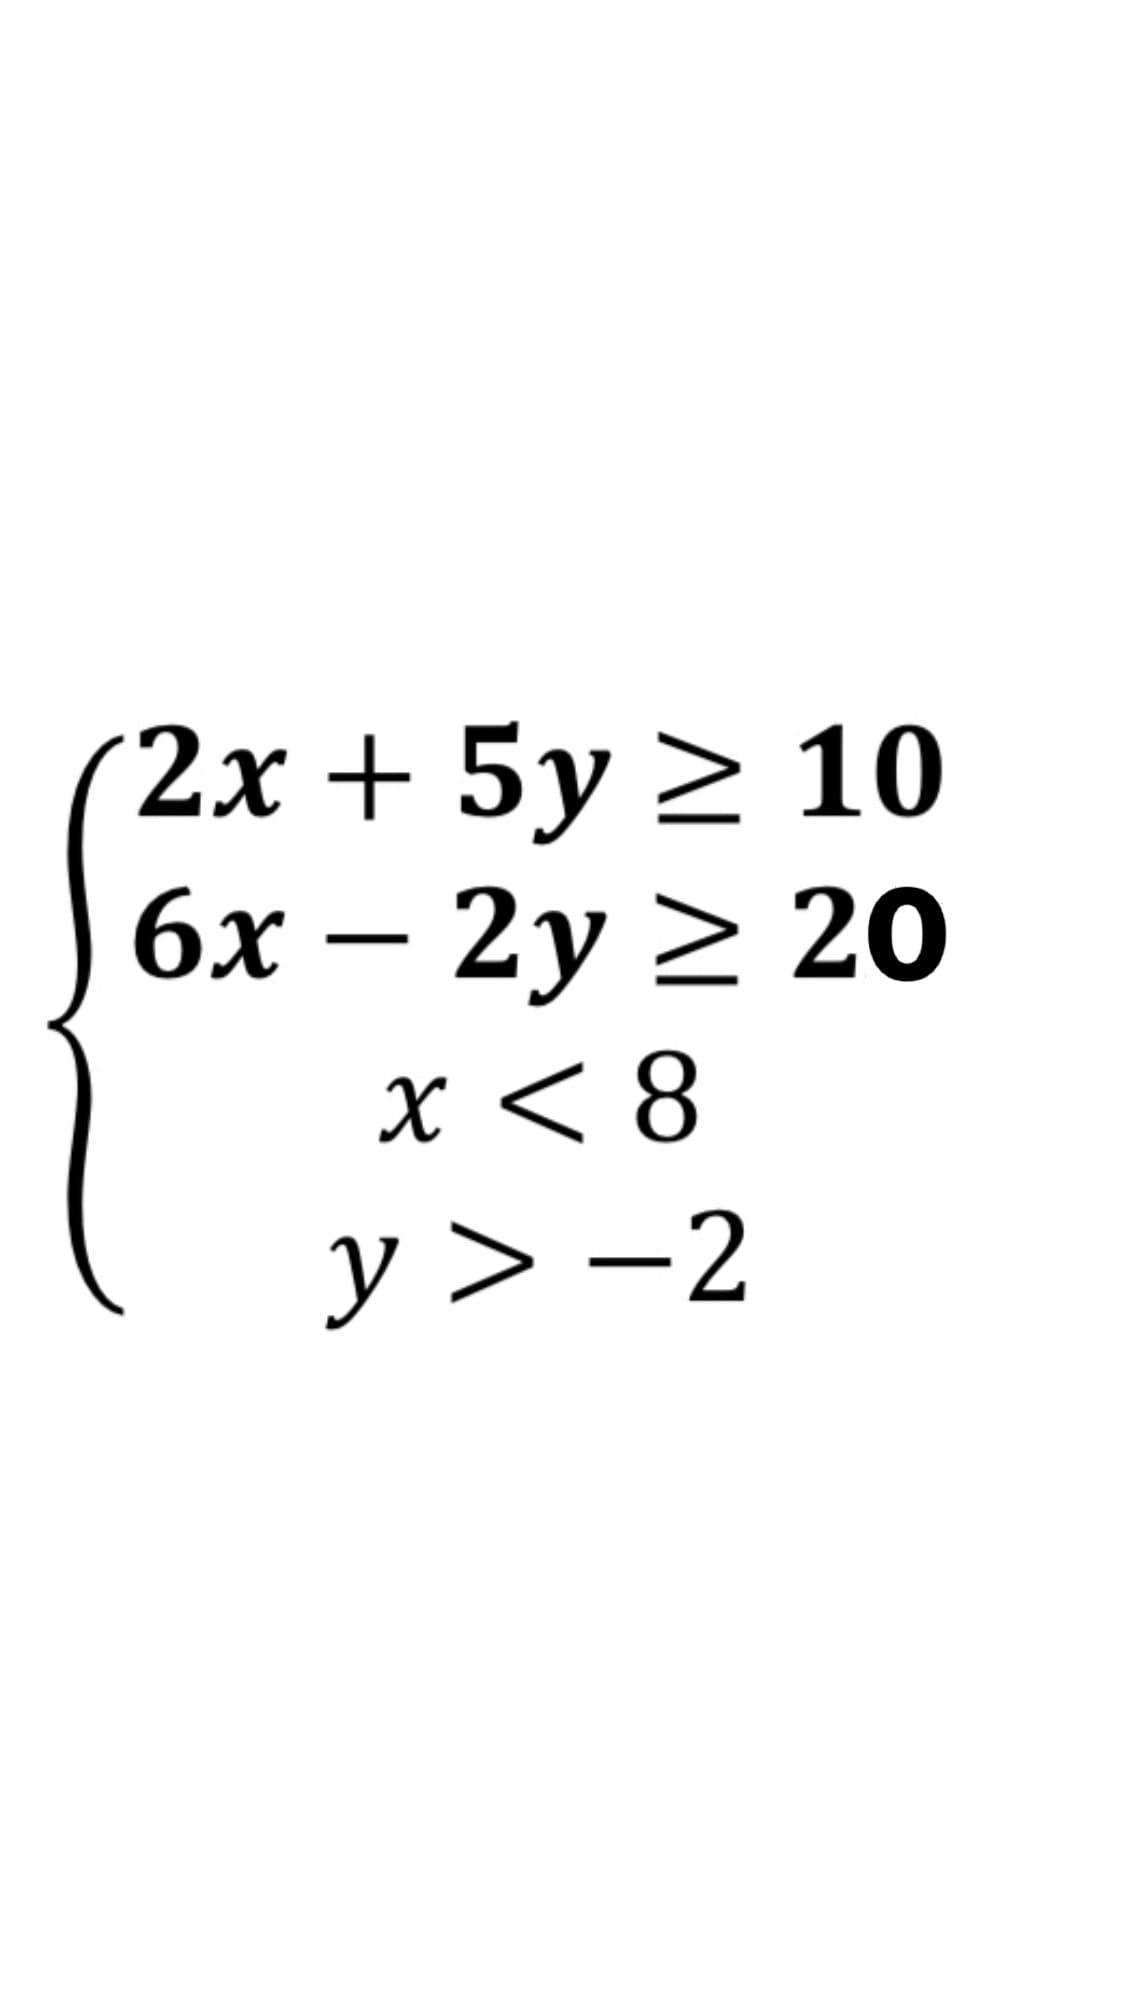 2х + 5у > 10
6х — 2у 2 20
X <8
y > -2
